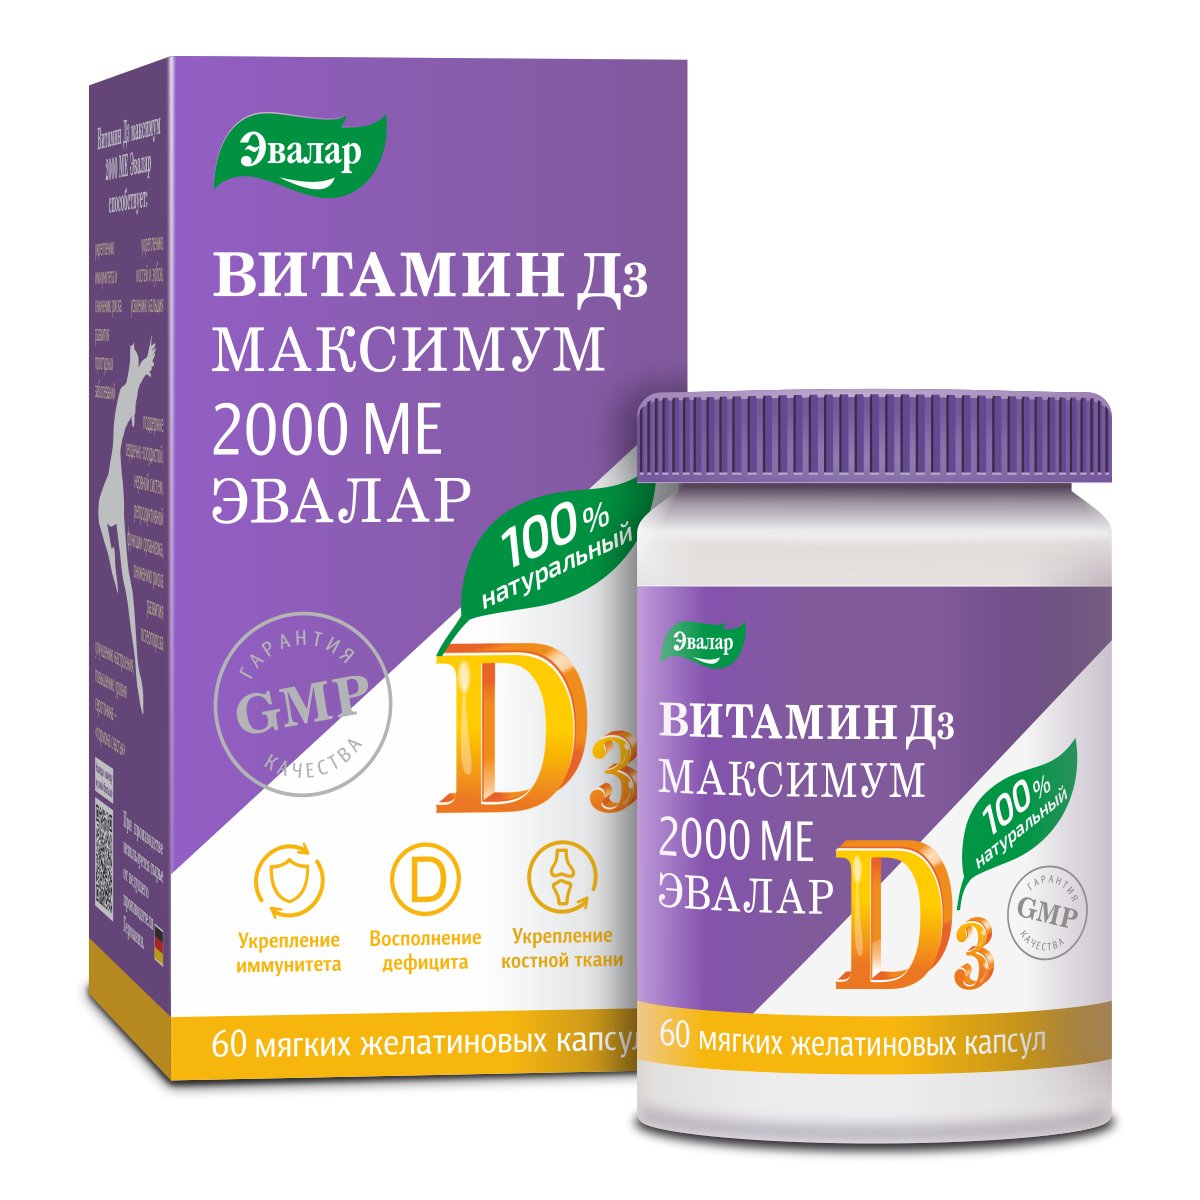 Витамин Д3 максимум 2000 МЕ, 60 капсул, Эвалар